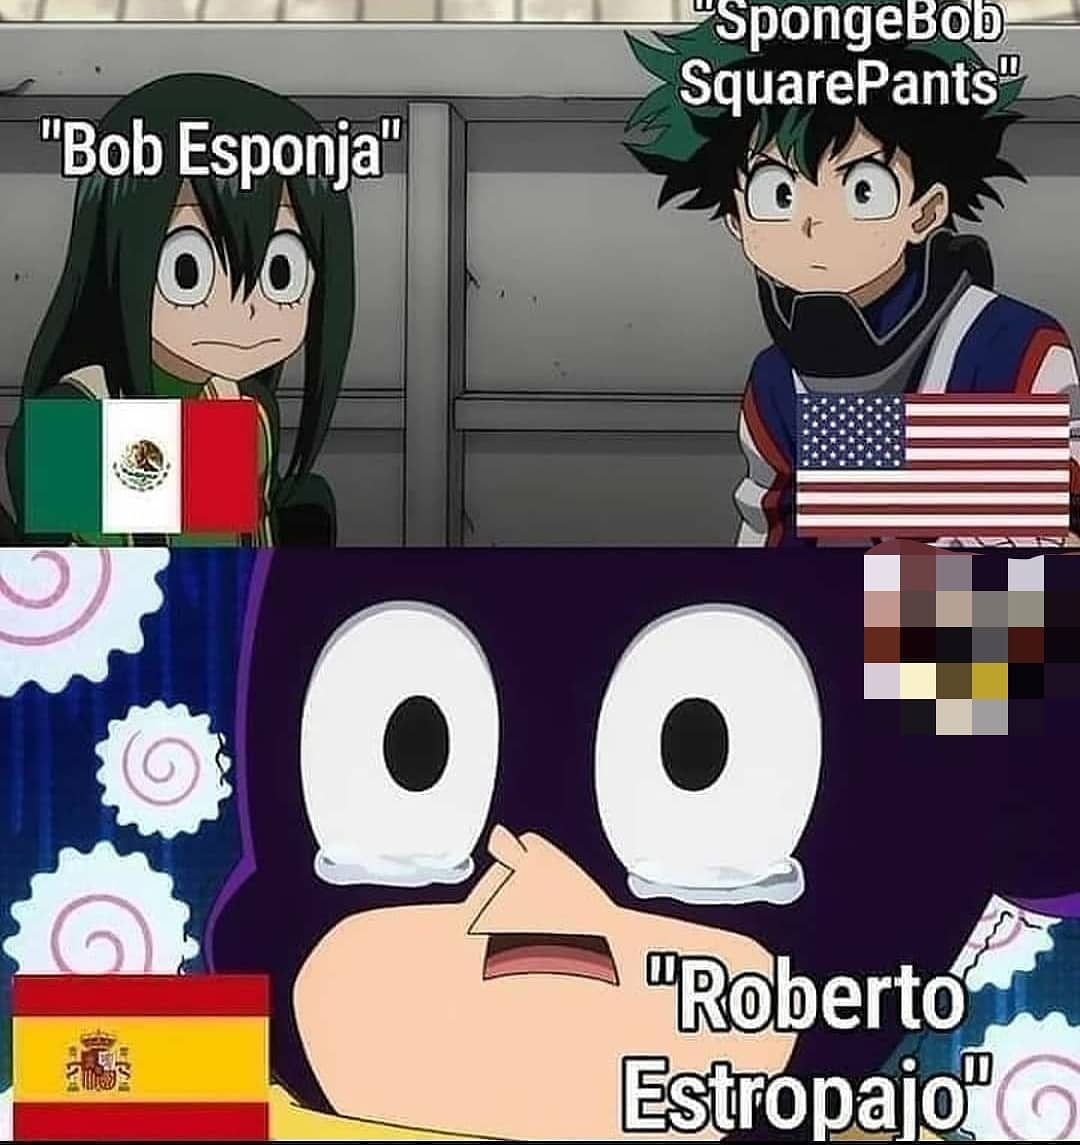 "Bob Esponja". "SpongeBob SquarePants". "Roberto Estropajo".